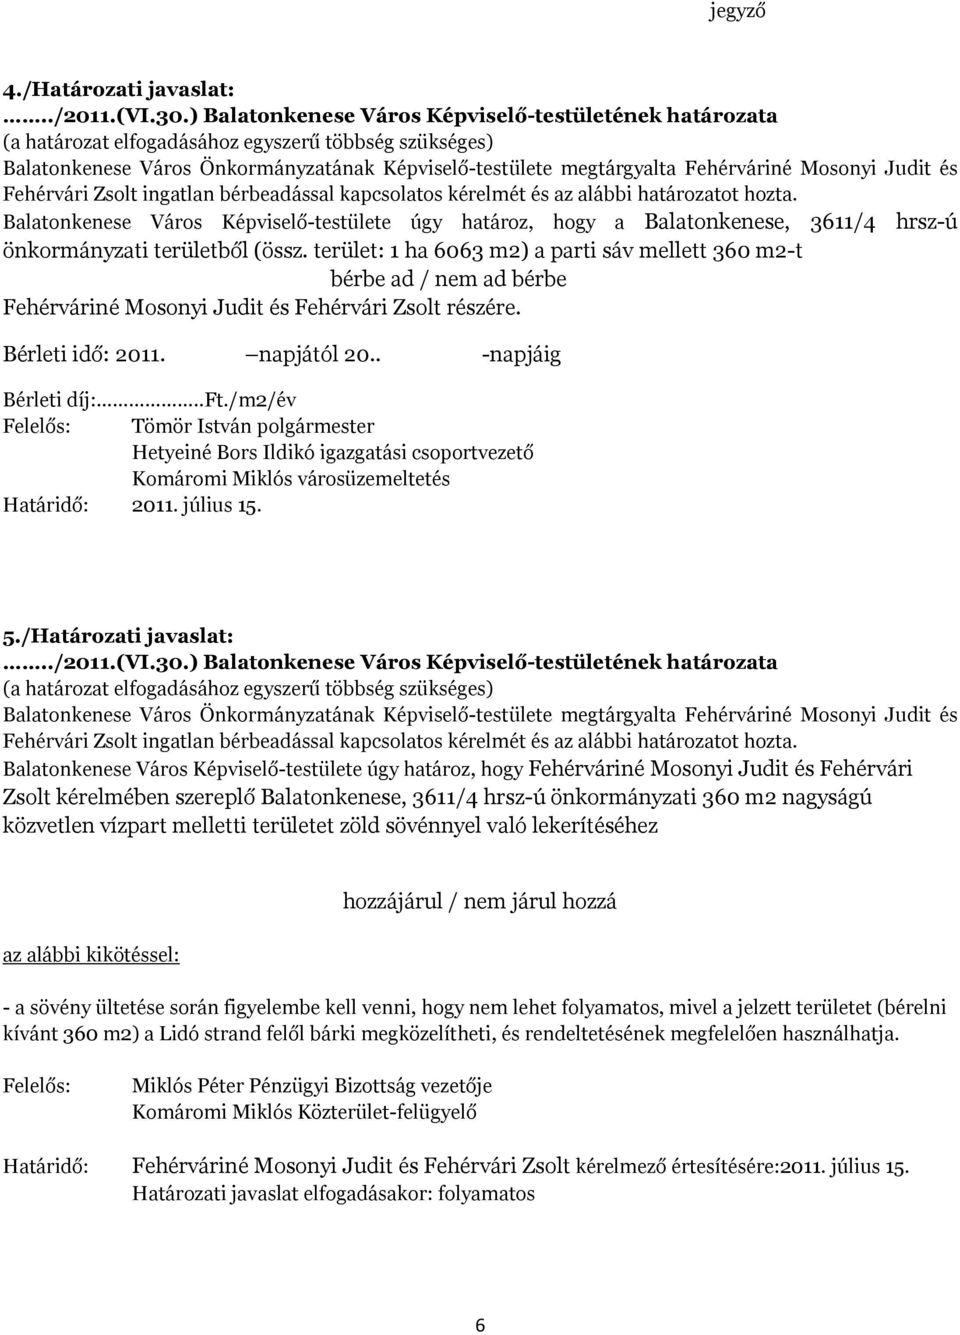 /Határozati javaslat: Balatonkenese Város Képviselő-testülete úgy határoz, hogy Fehérváriné Mosonyi Judit és Fehérvári Zsolt kérelmében szereplő Balatonkenese, 3611/4 hrsz-ú önkormányzati 360 m2